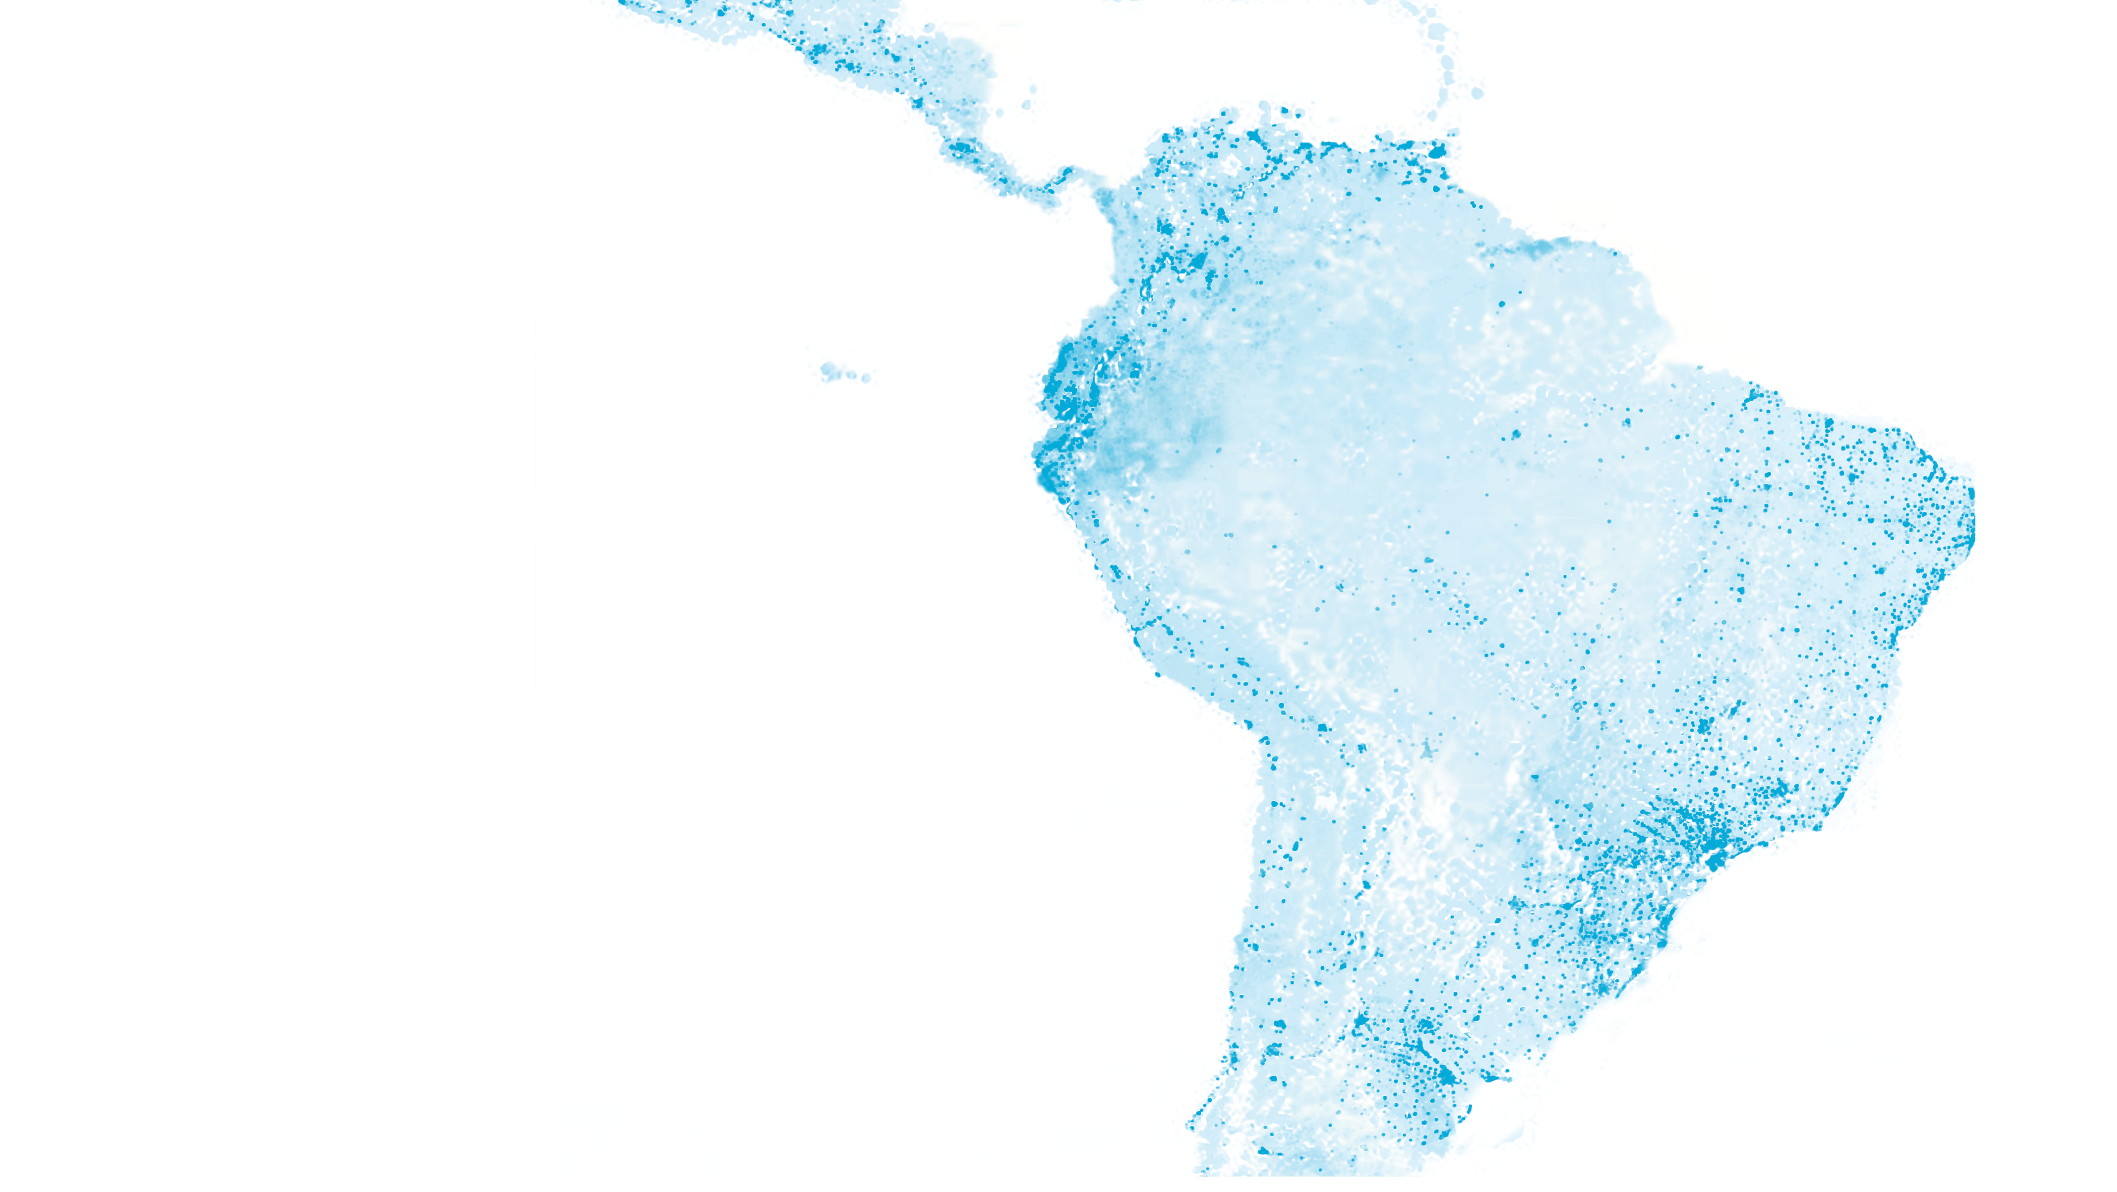 Foto estilizada de Sudamérica por la noche tomada de un satélite